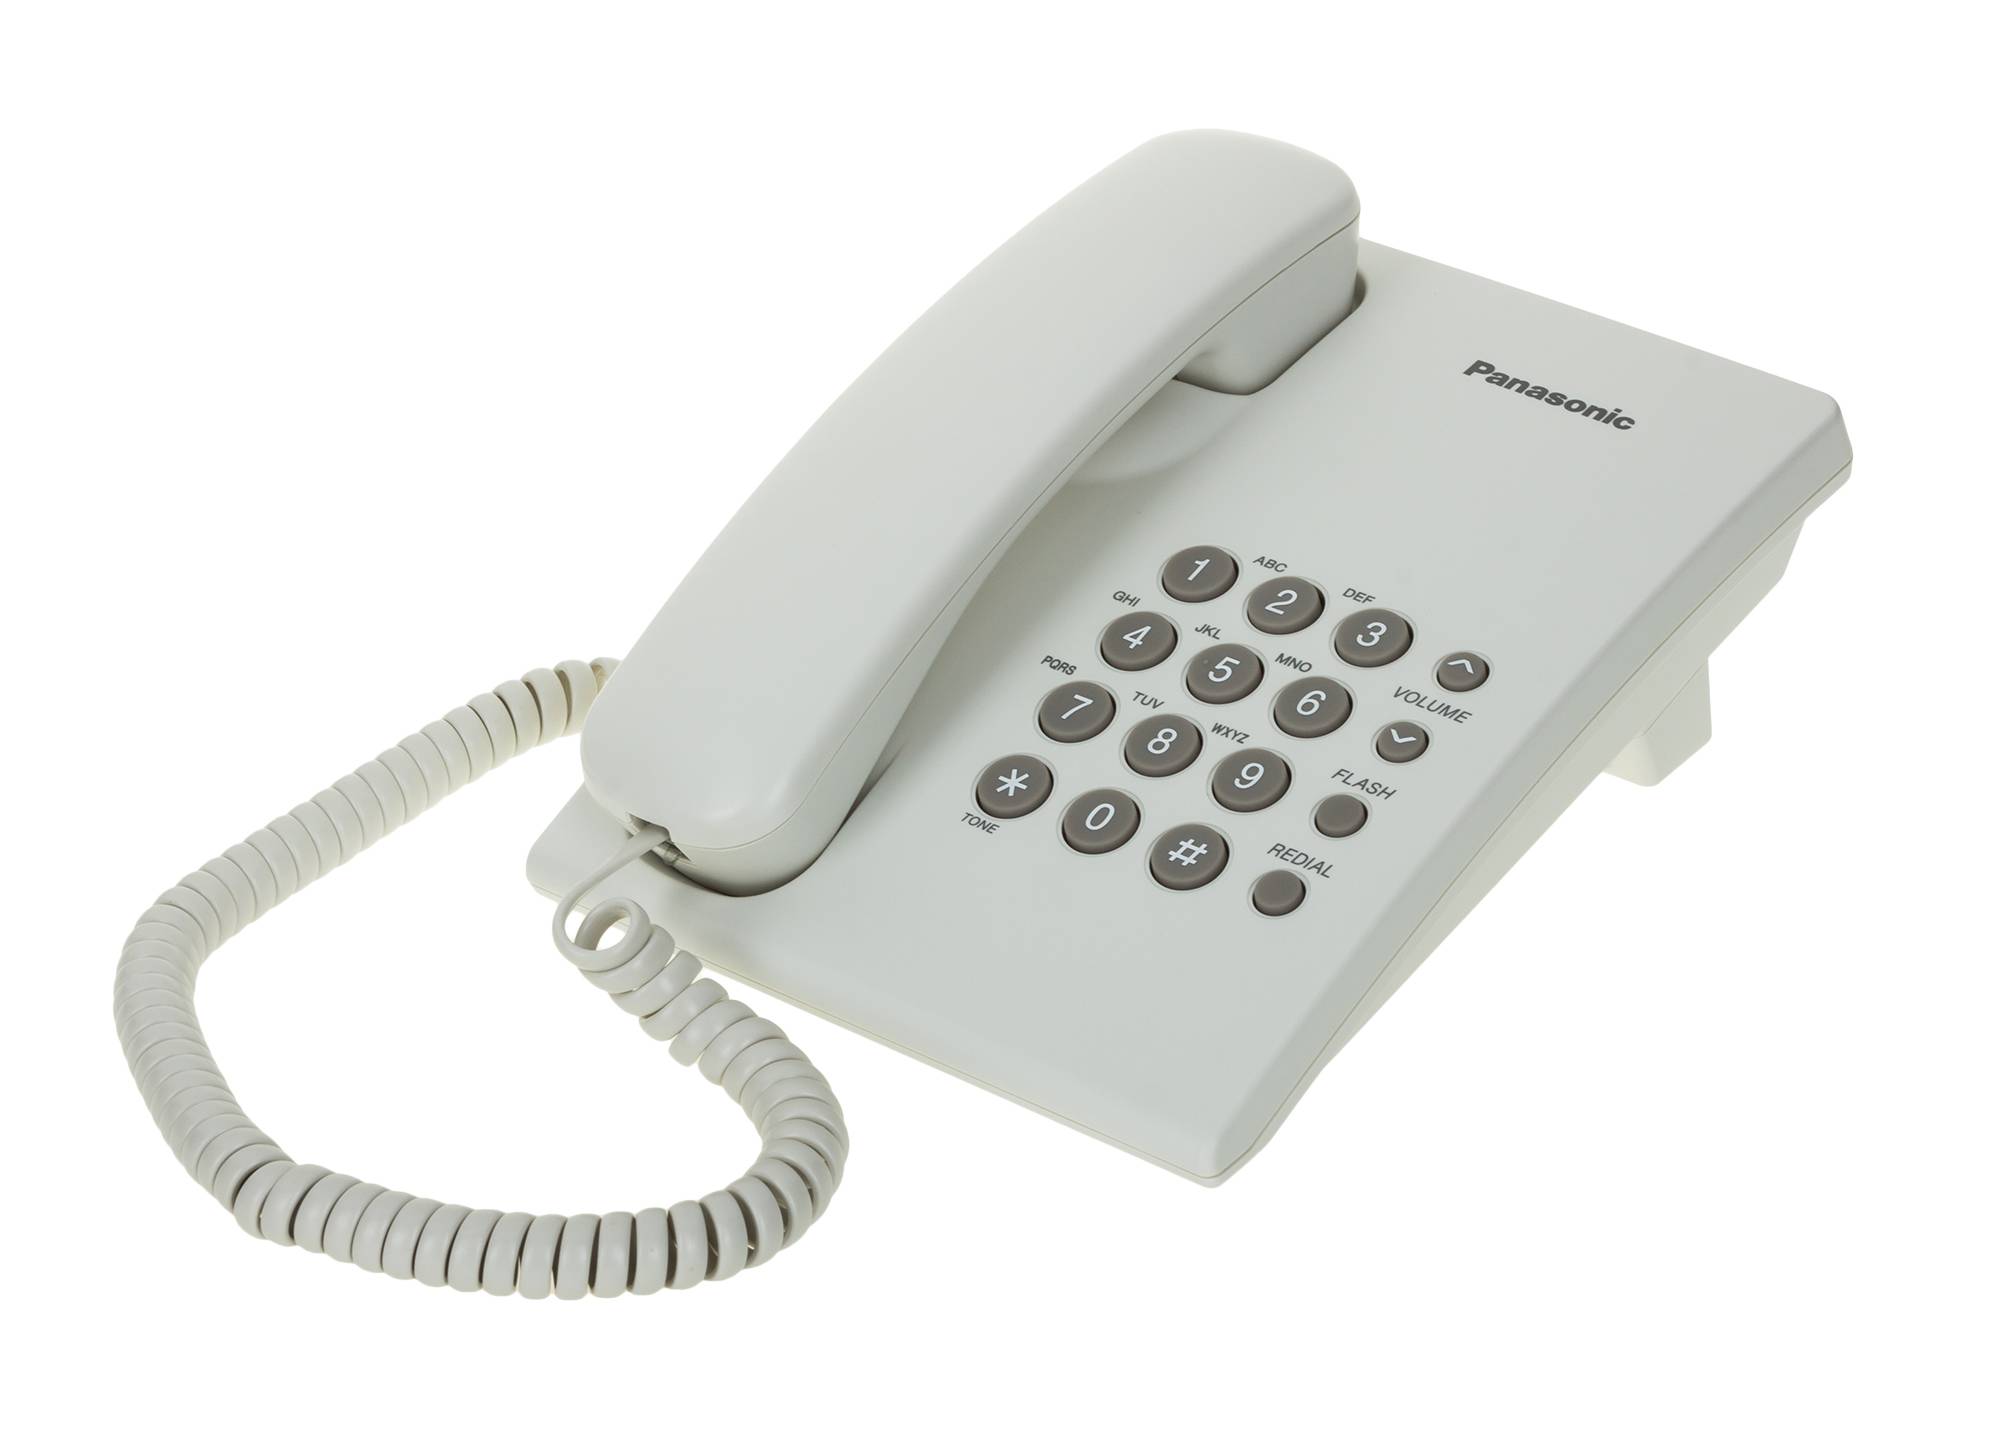 Что значит стационарный телефон. Телефон Panasonic KX-ts2350 ruw белый. Panasonic KX-ts2350ruw белый. Телефон Panasonic KX-ts2350ruw. Аппарат телефонный проводной Panasonic KX-ts2350.